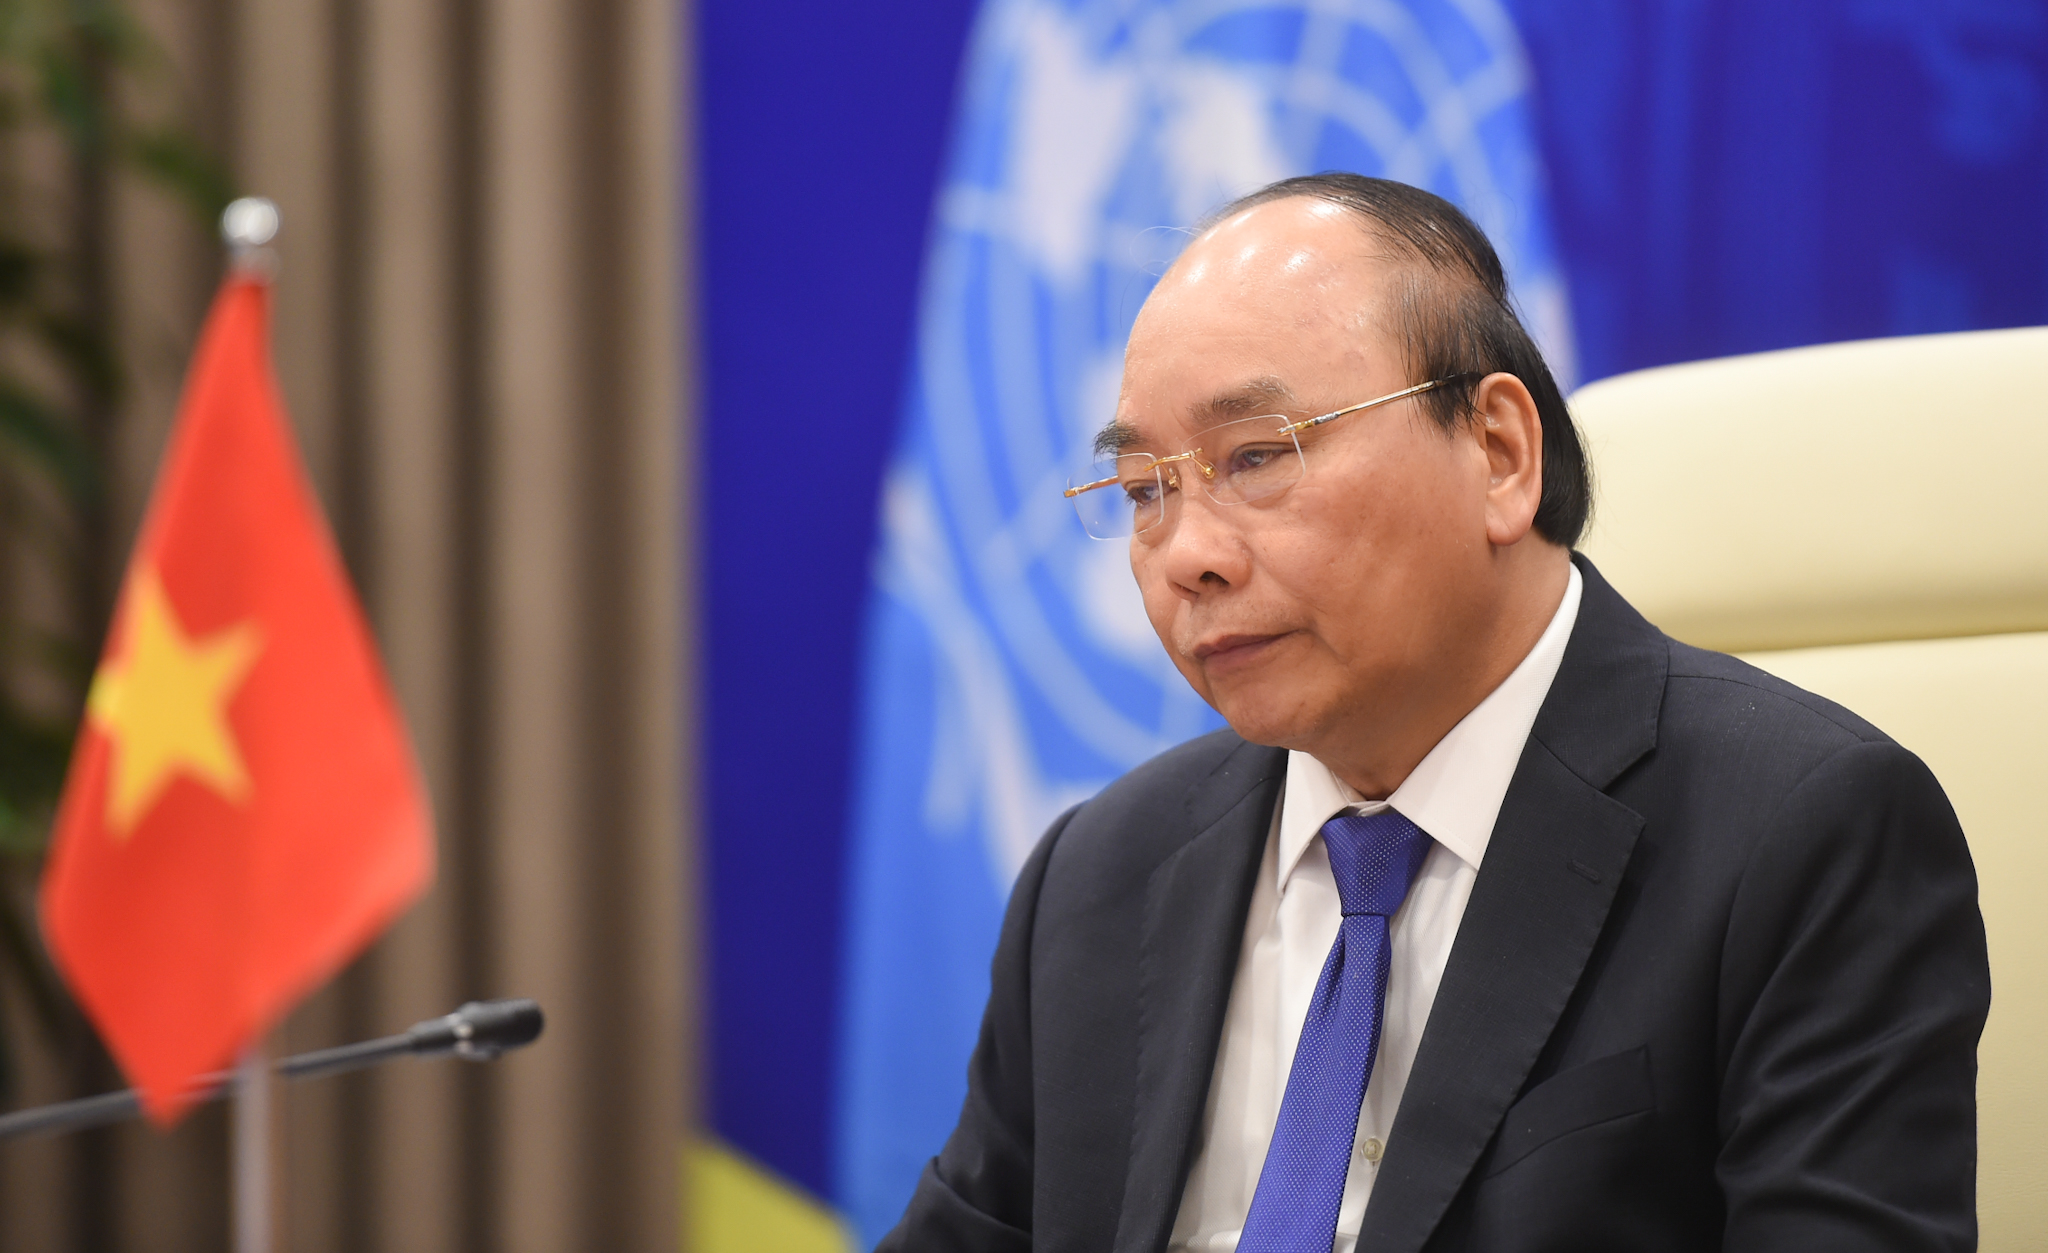 Thủ tướng Nguyễn Xuân Phúc nhấn mạnh những hậu quả nghiêm trọng đối với Trái đất và nhân loại do tác động của biến đổi khí hậu. Ảnh: VGP/Quang Hiếu